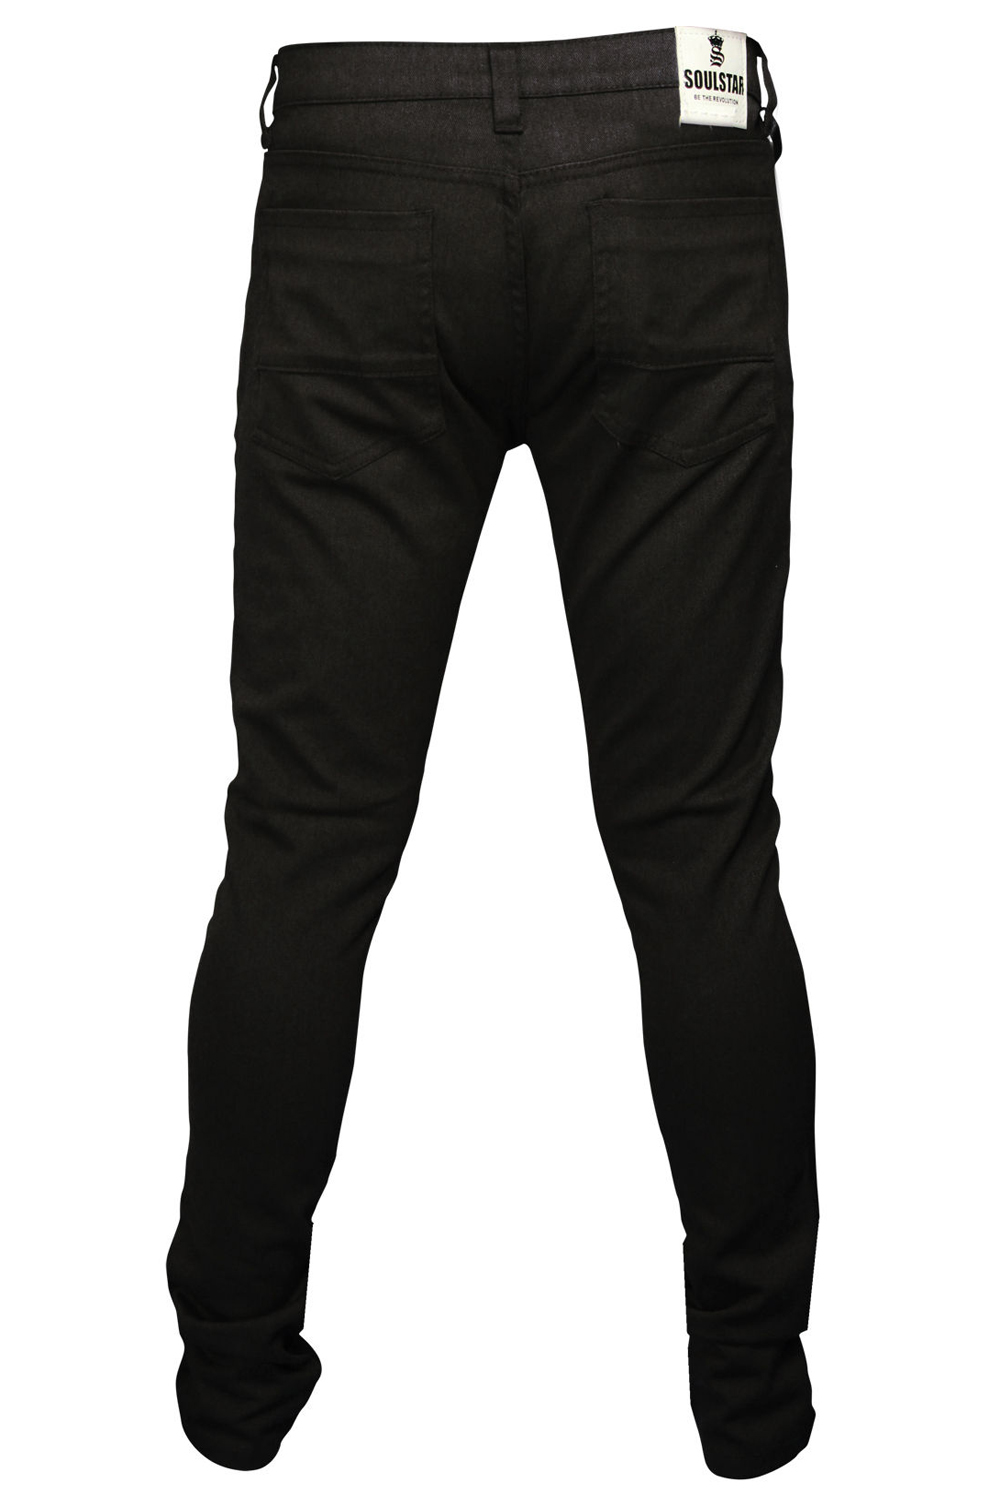 Soulstar Deo Mens Skinny Jeans Designer Coloured Stretch Slim Fit Denim ...